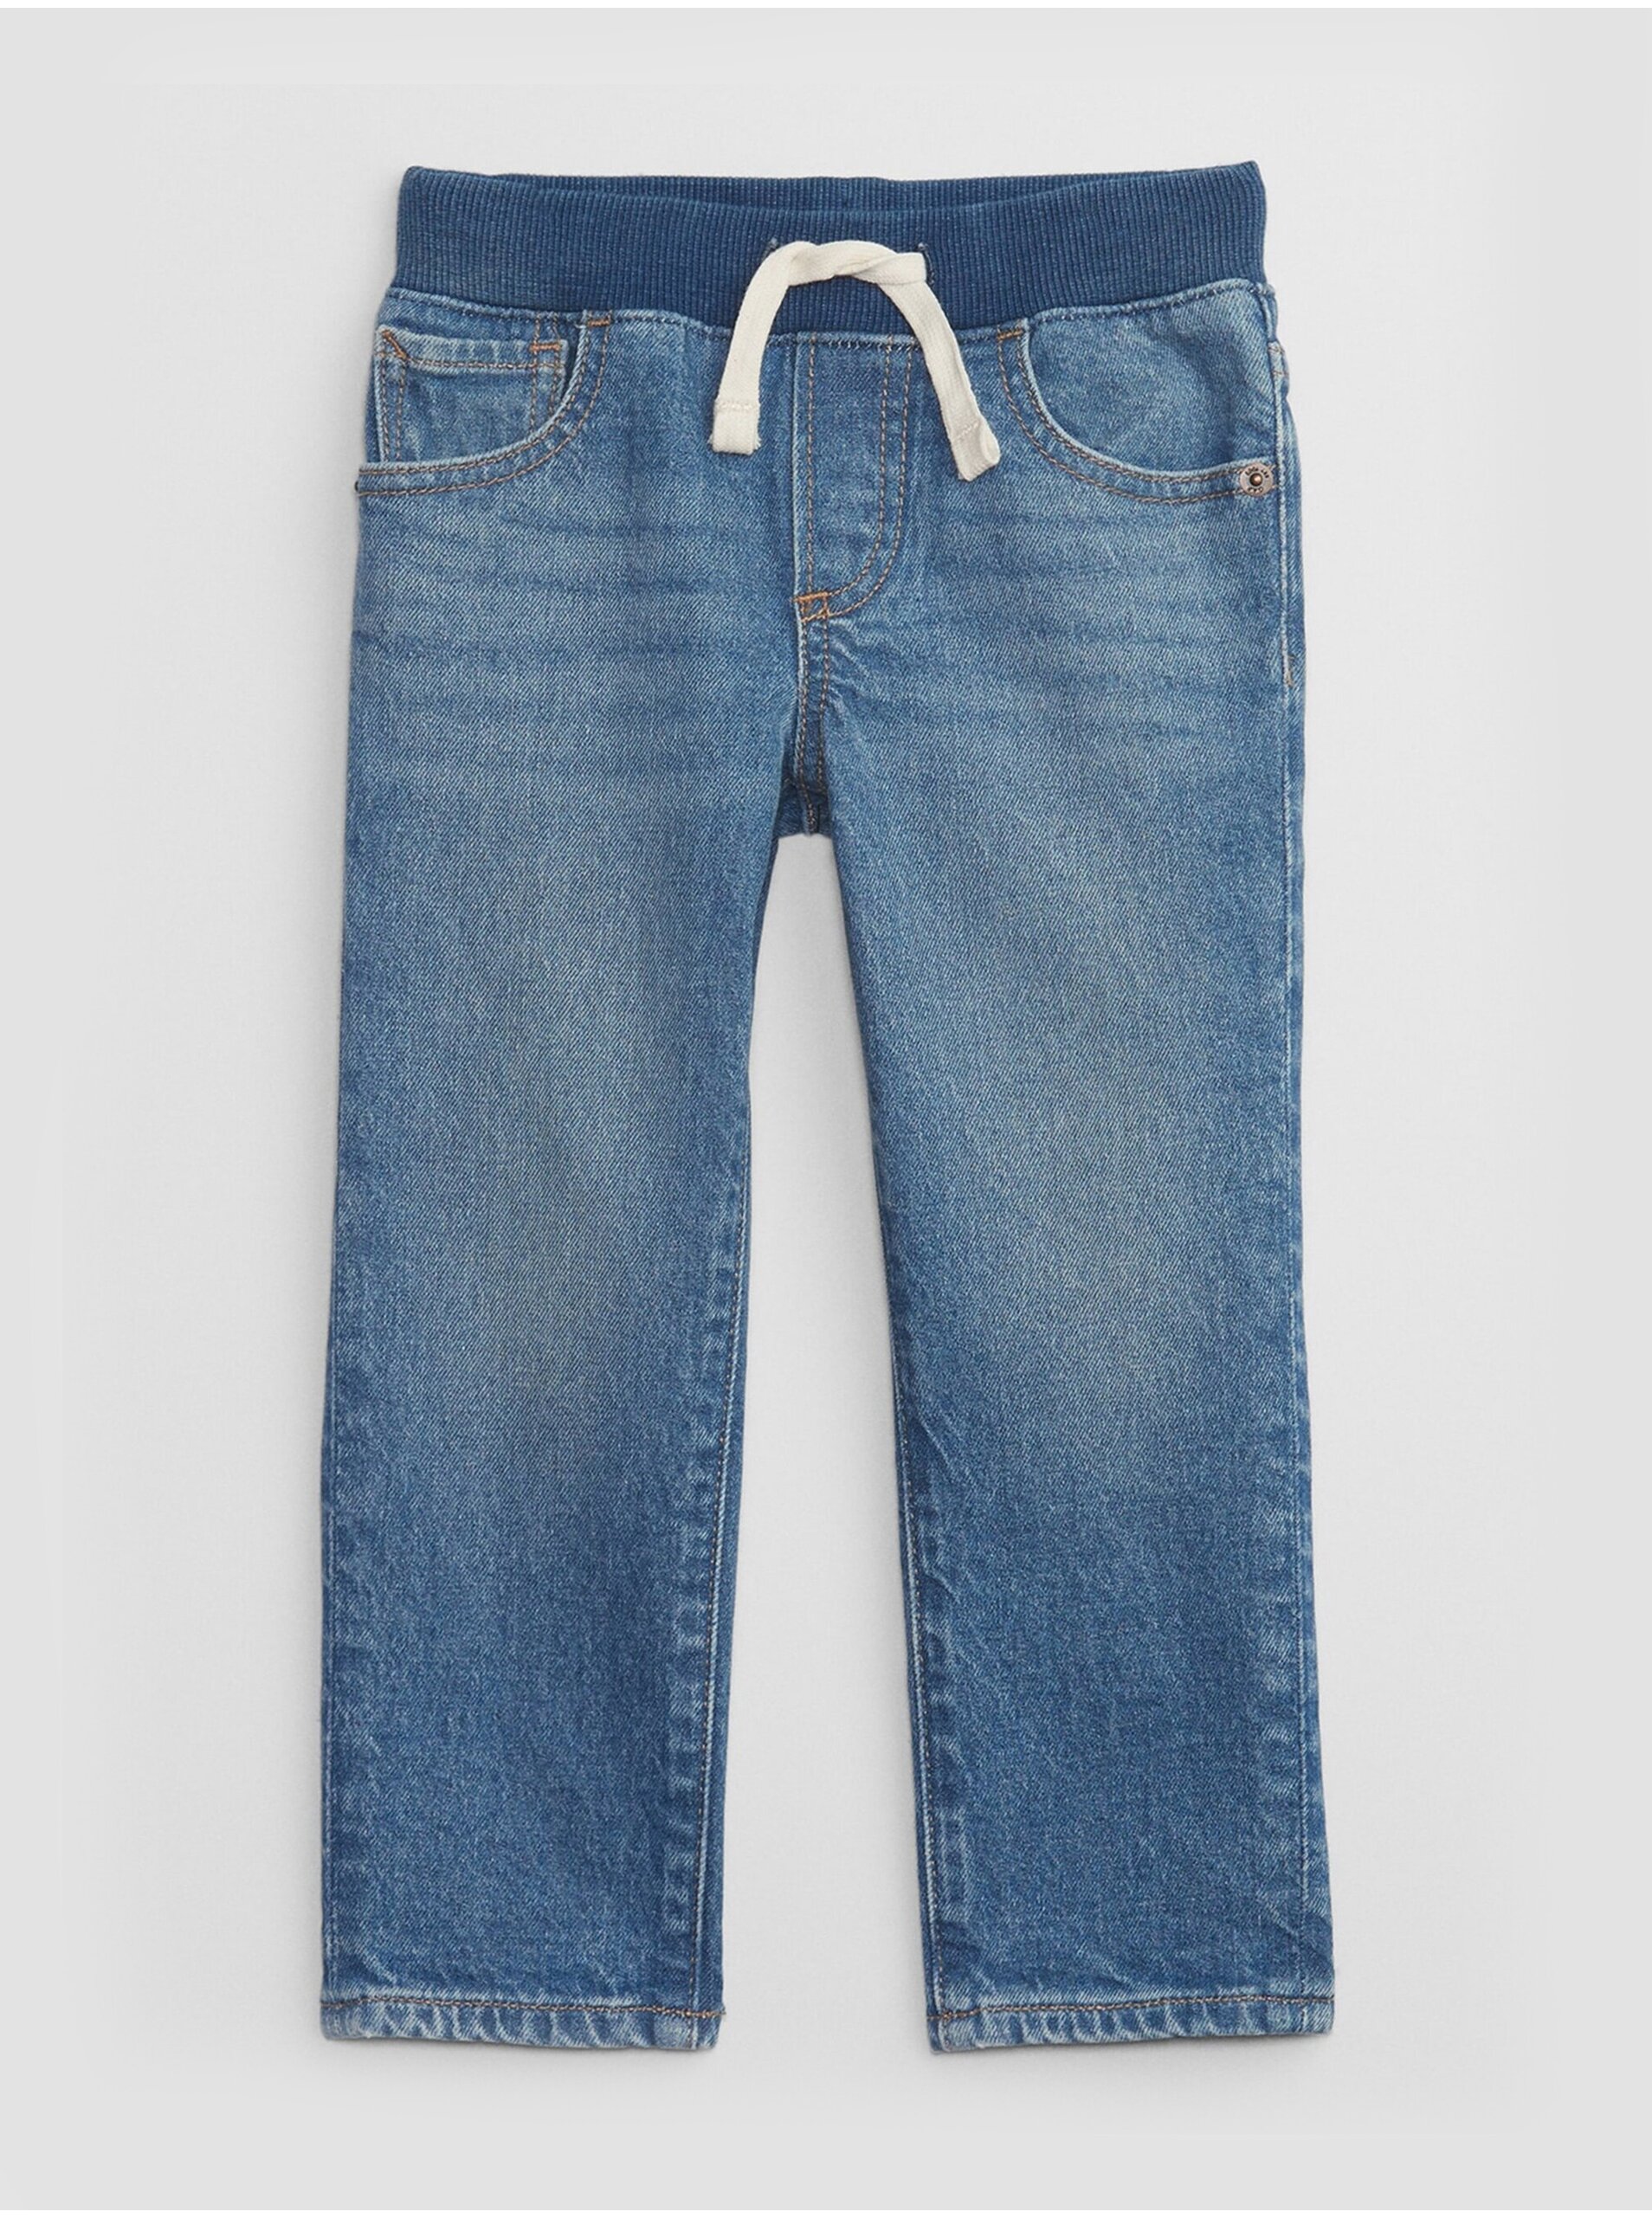 Lacno Modré chlapčenské slim fit džínsy GAP